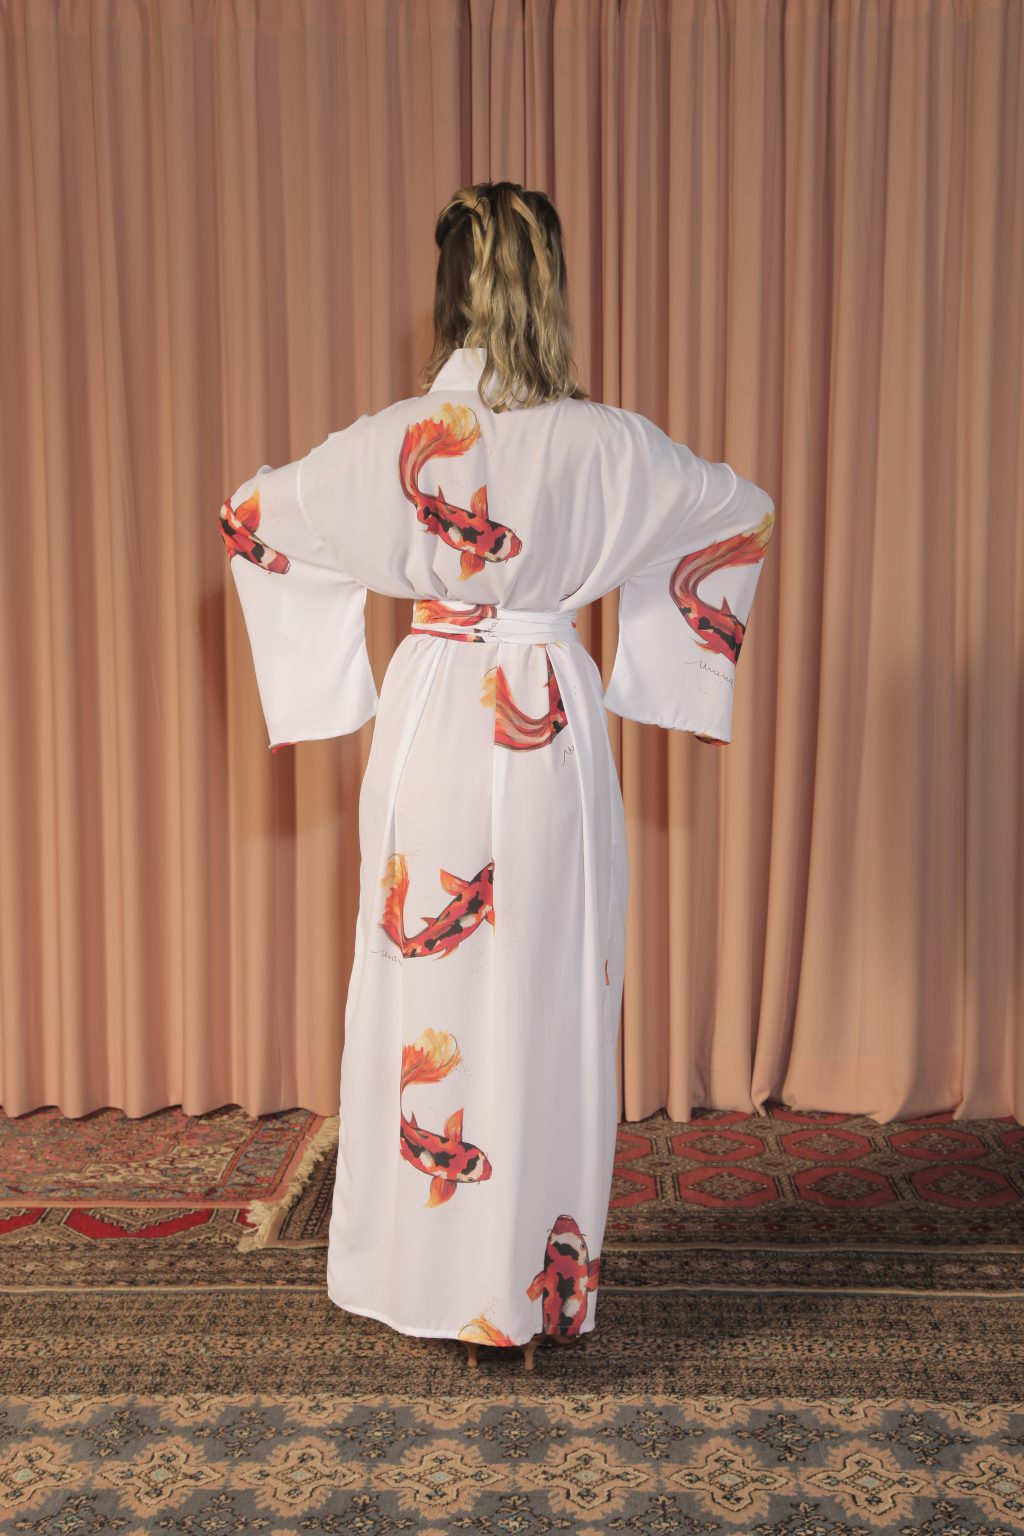 Mulher loira usando um kimono longo manga longa faixa na cintura estampa exclusiva branco com carpas leveza conforto praticidade maria sanz kimono quimono